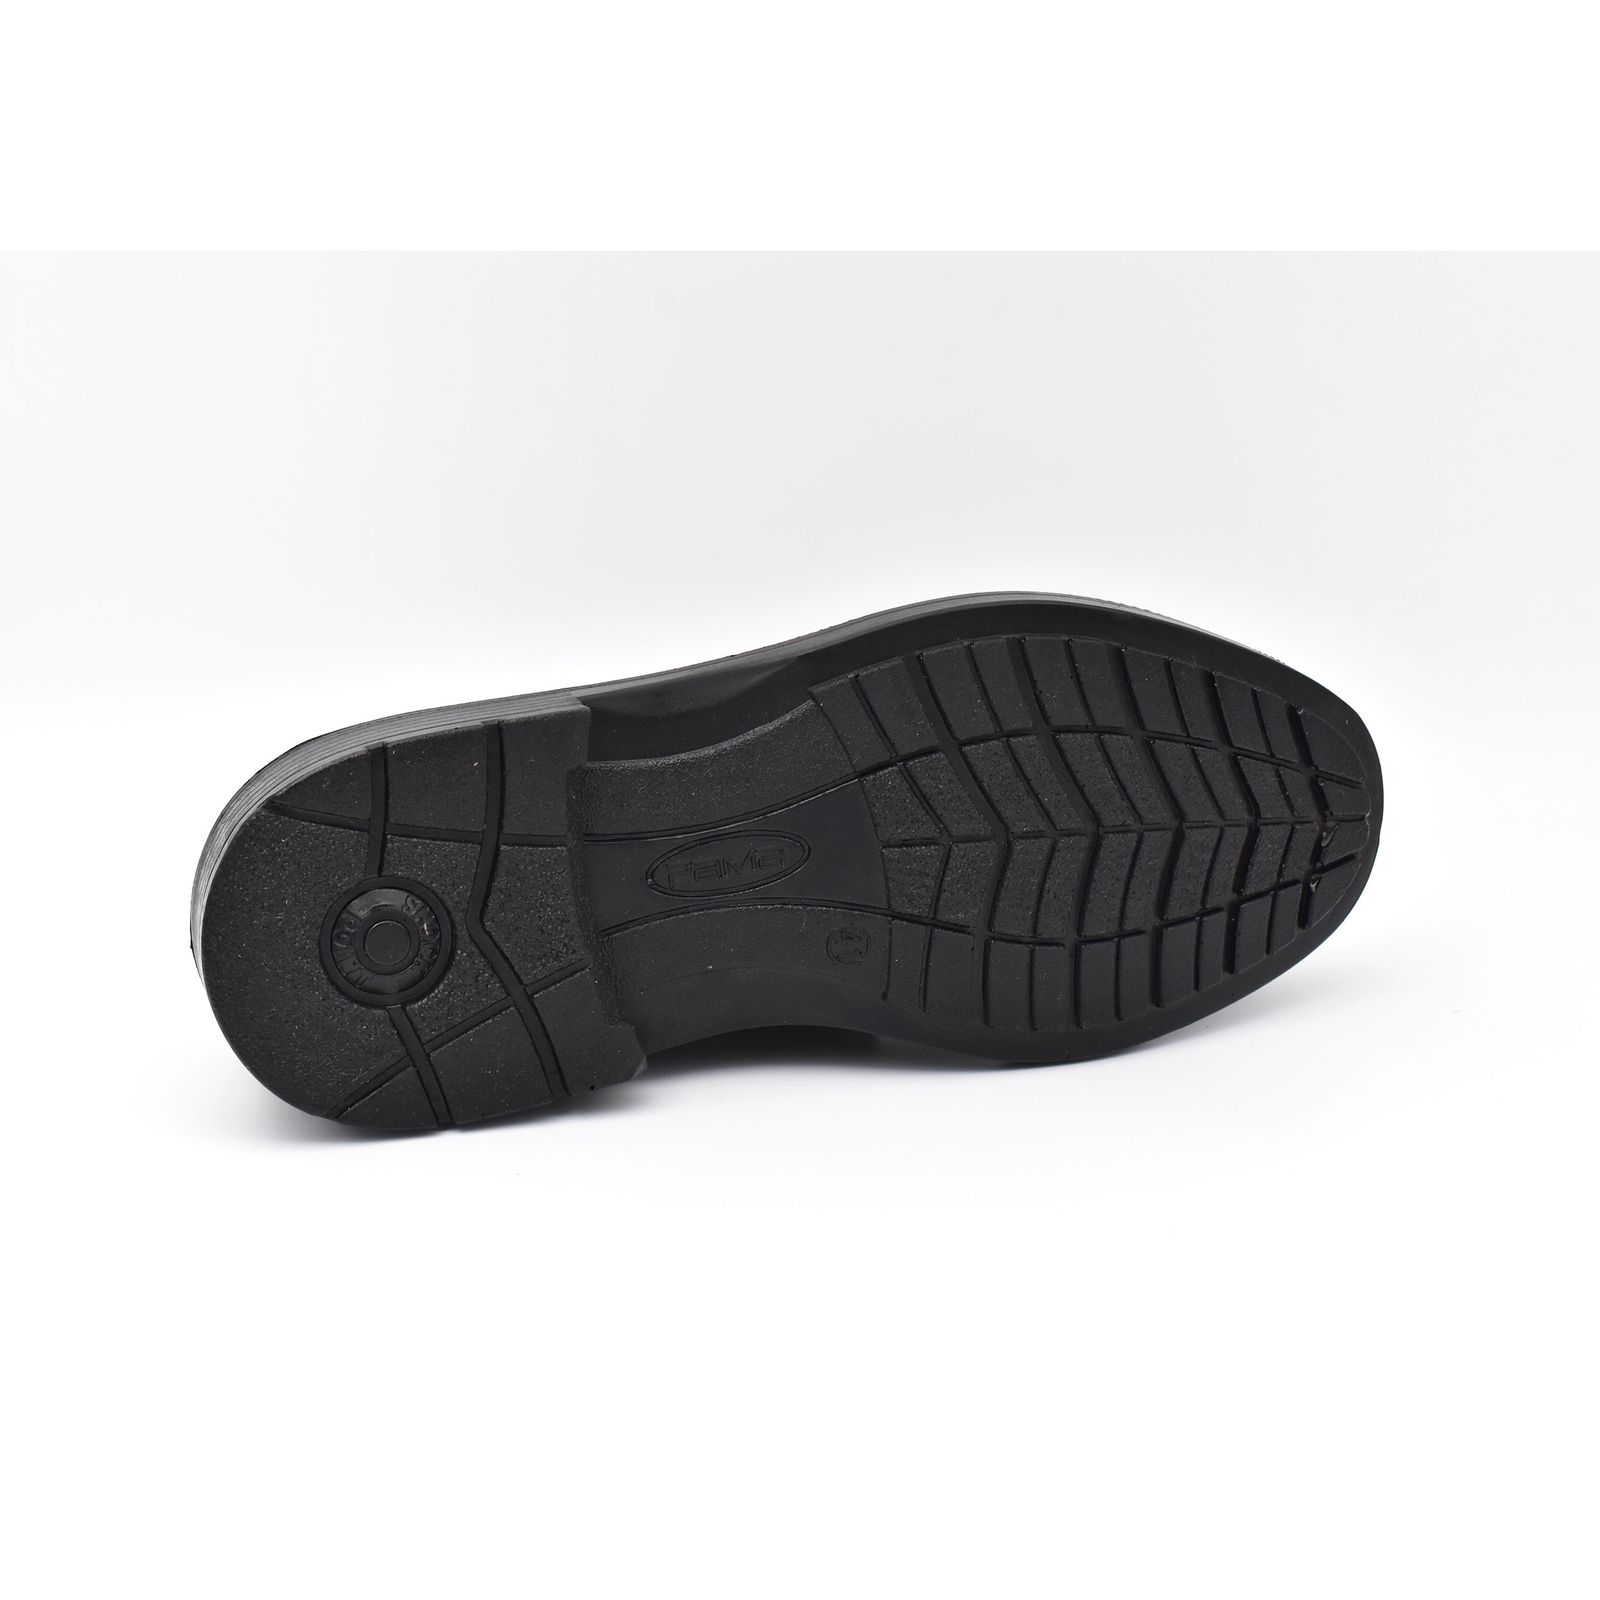 کفش مردانه پاما مدل Morano کد G1186 -  - 9